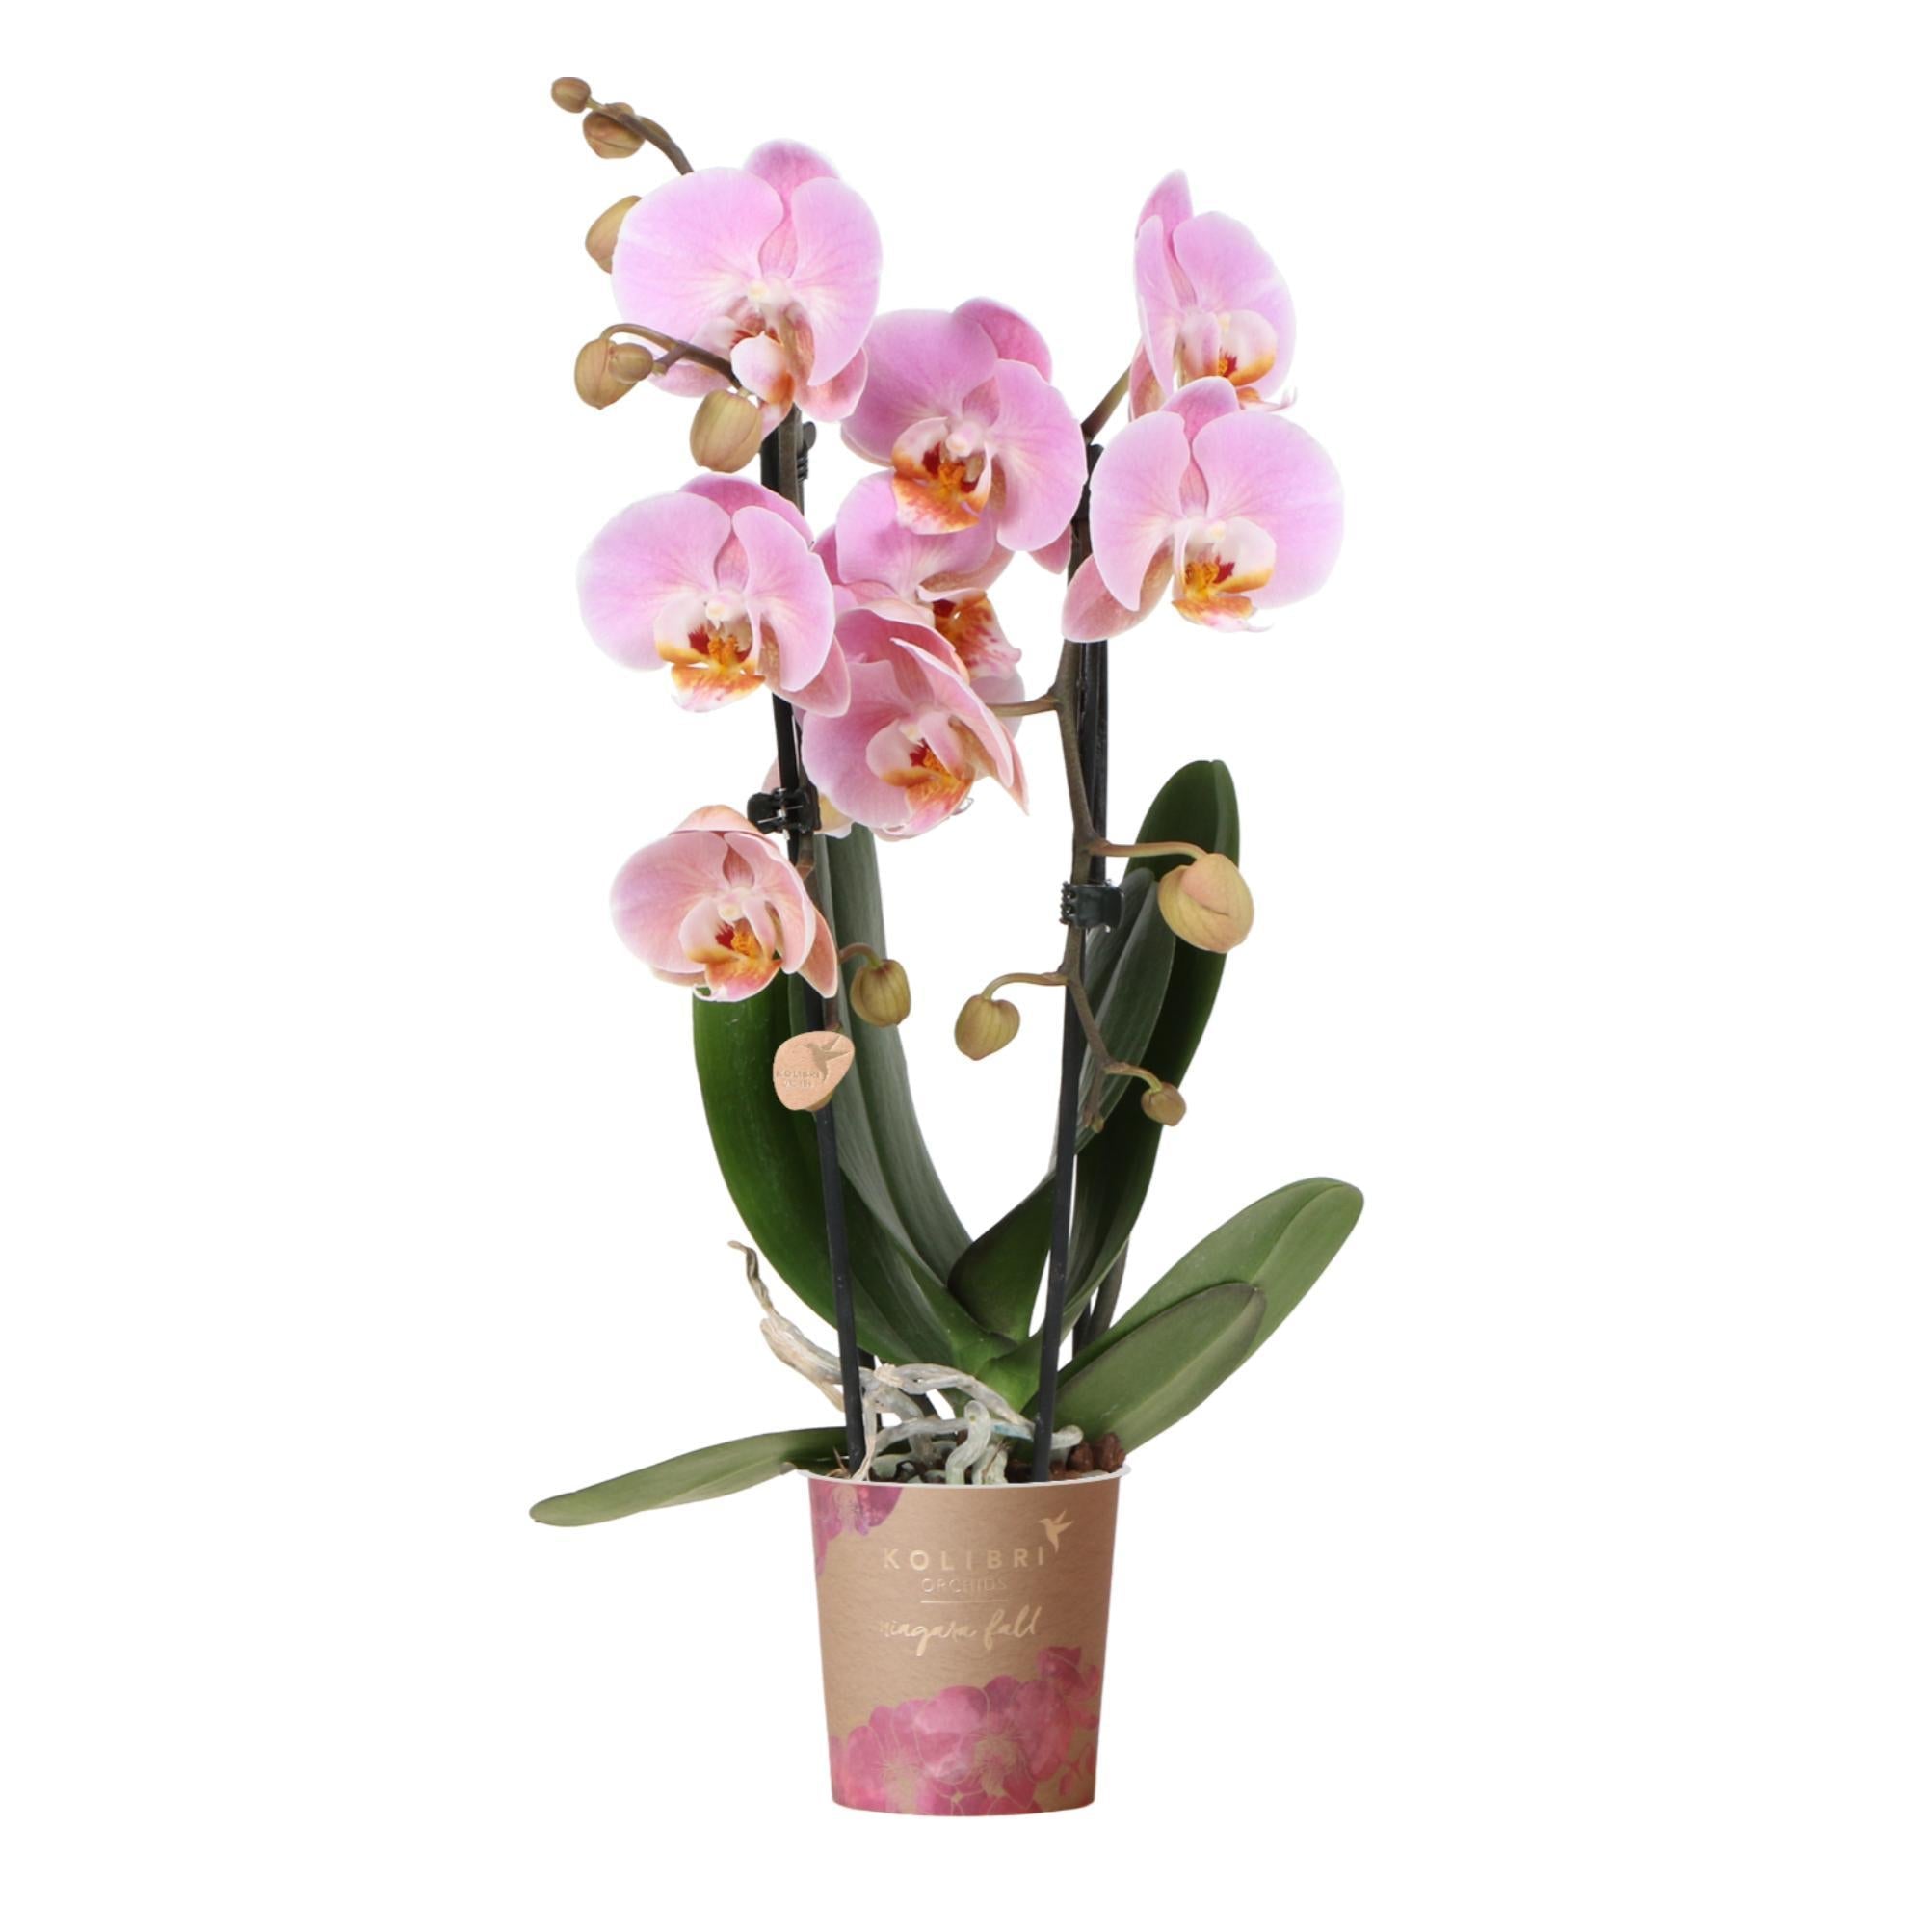 kolibriorchids Kolibri Orchids - Orchidées colibris - Orchidée Phalaenopsis rose - Chute du Niagara - taille du pot 9cm